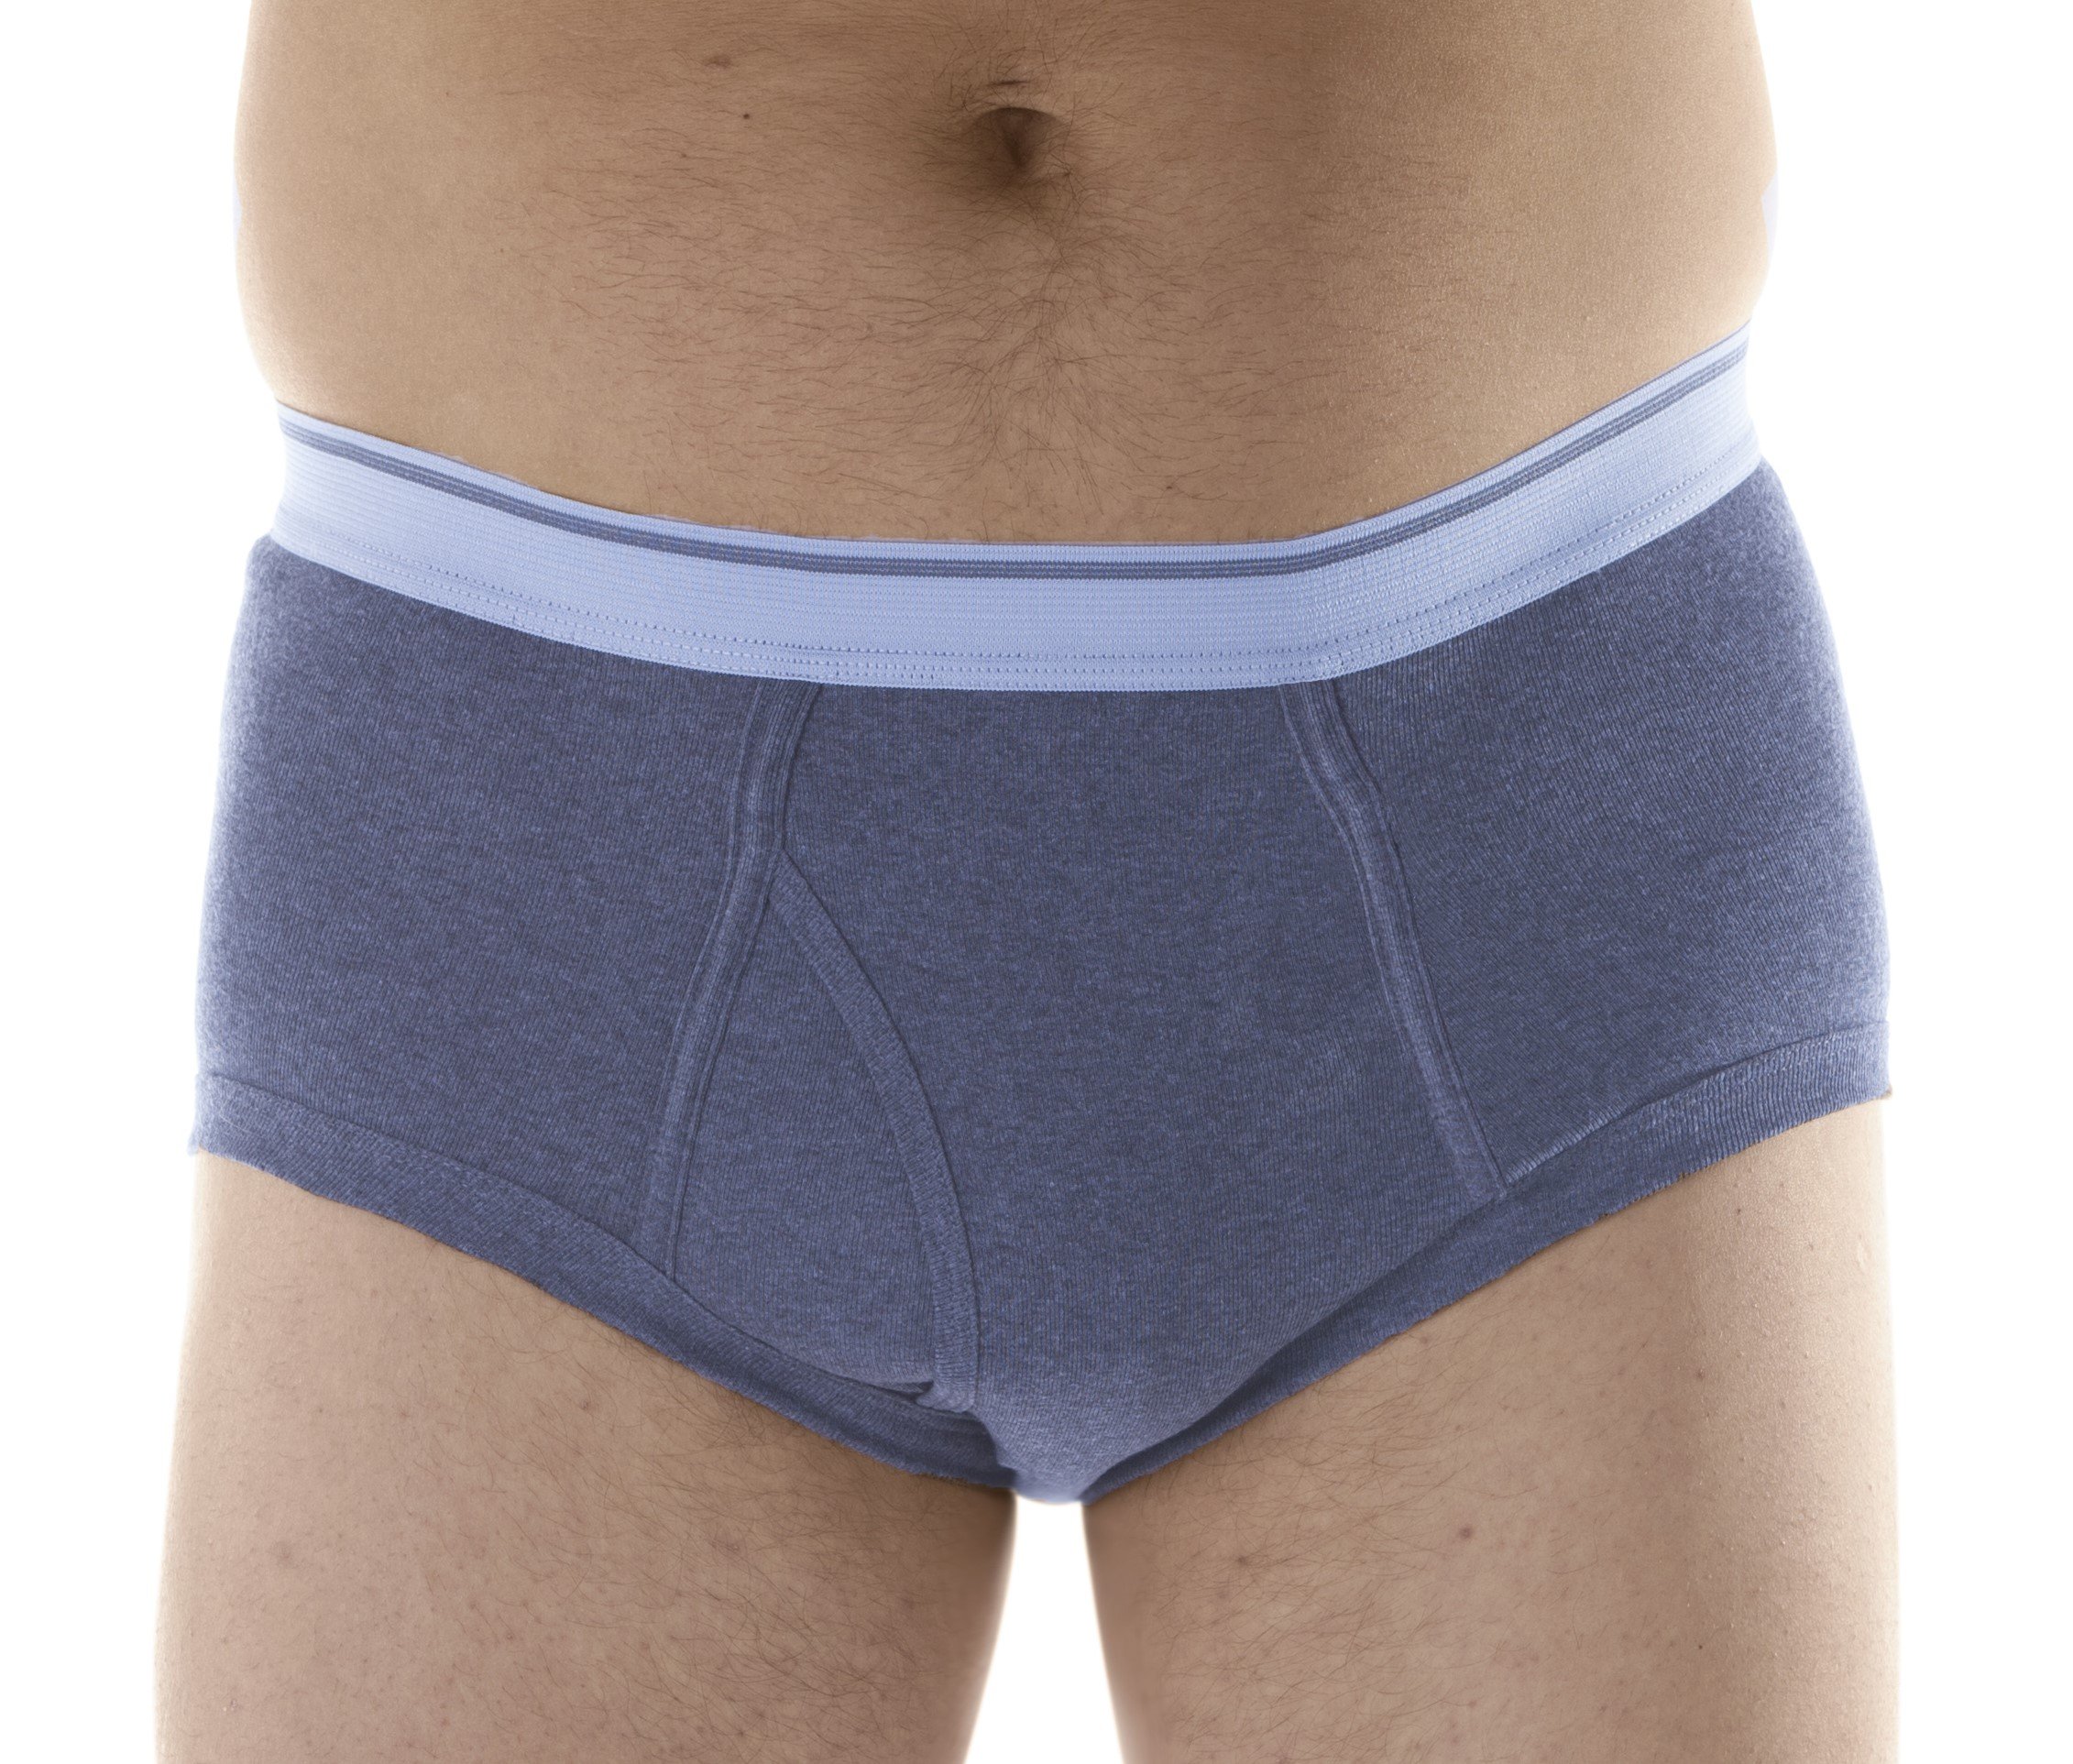 Cotton Comfort Panties - Wearever L100 - Regular Absorbency - Wearever